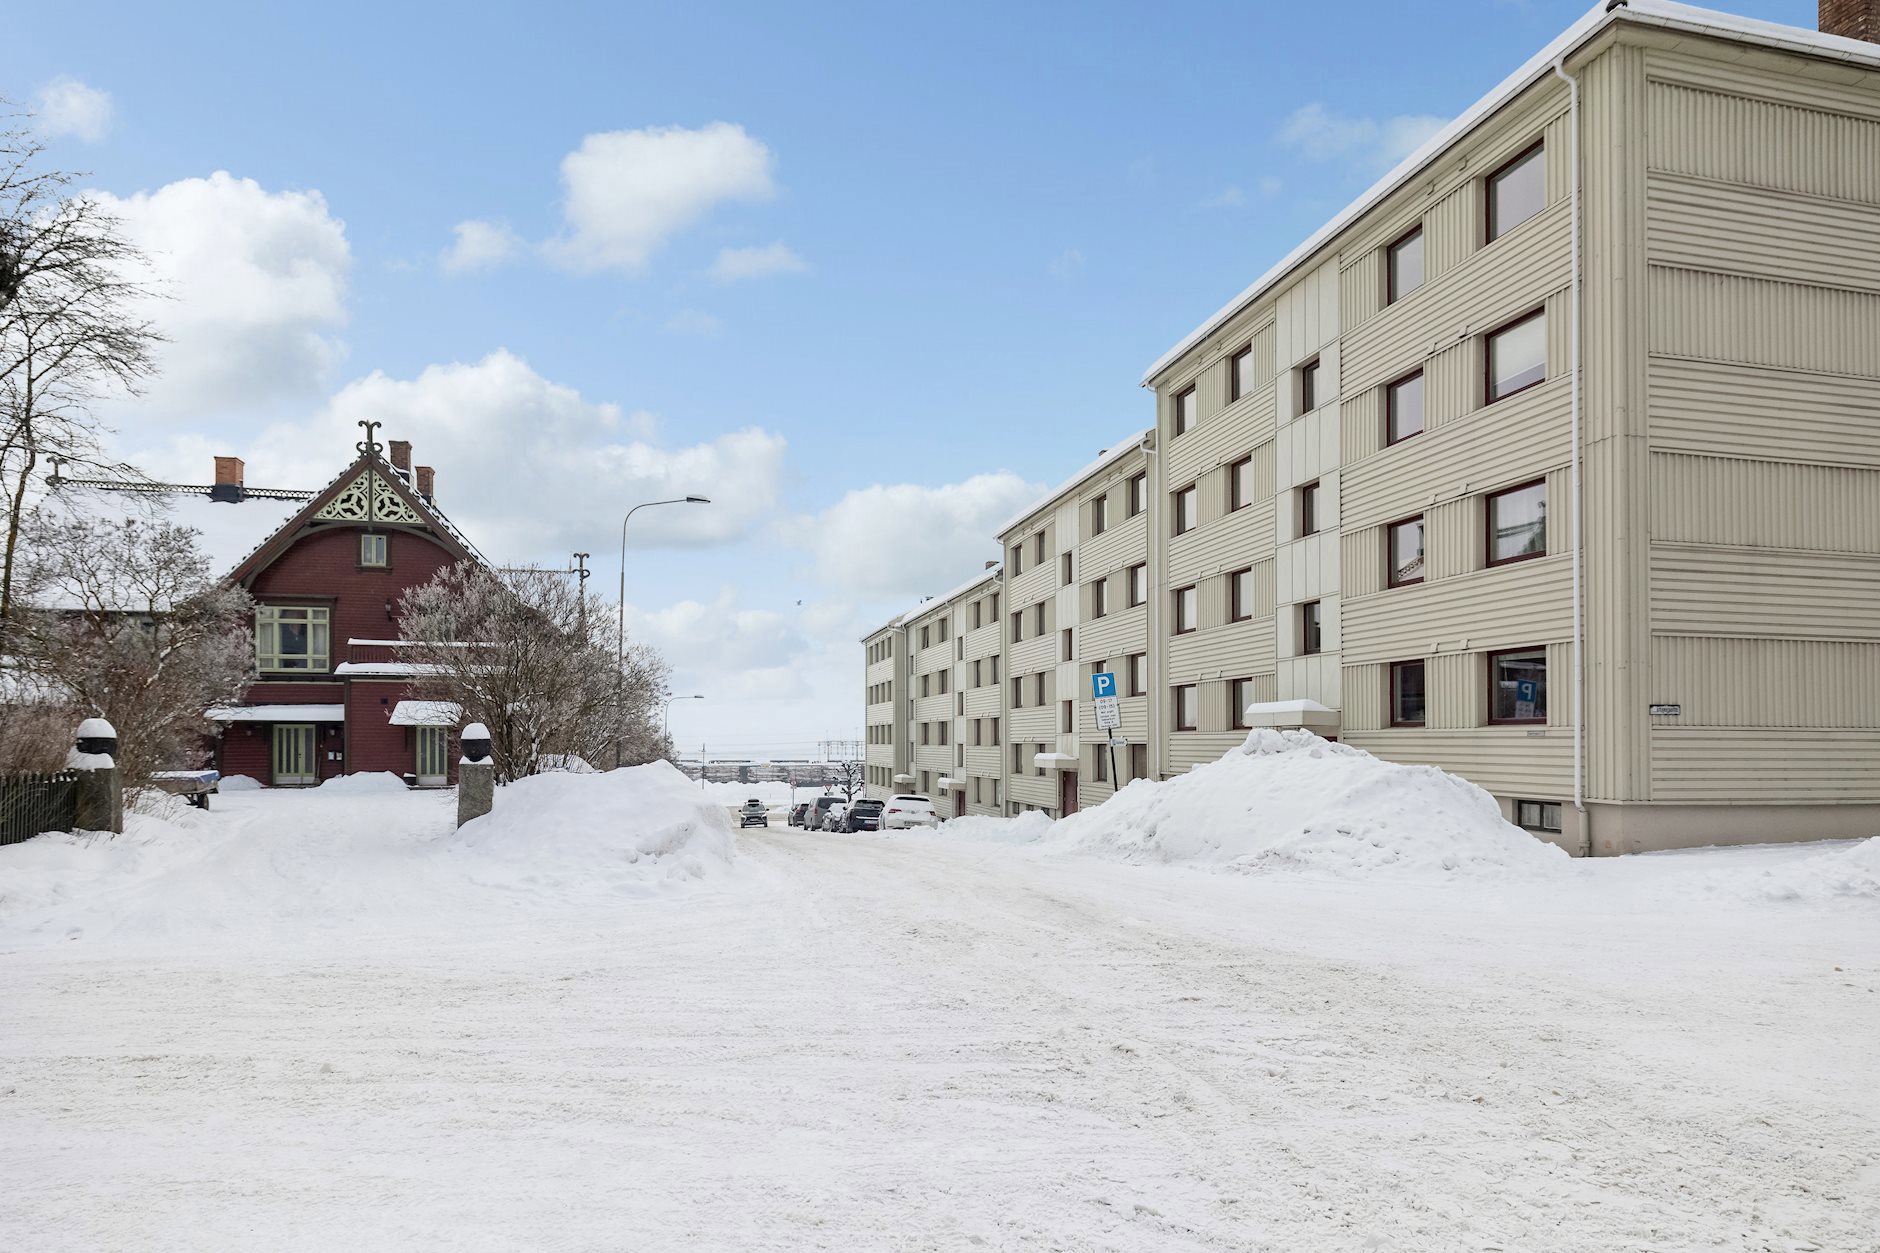 Sverdrups gate 2C, HAMAR | DNB Eiendom | Fra hjem til hjem